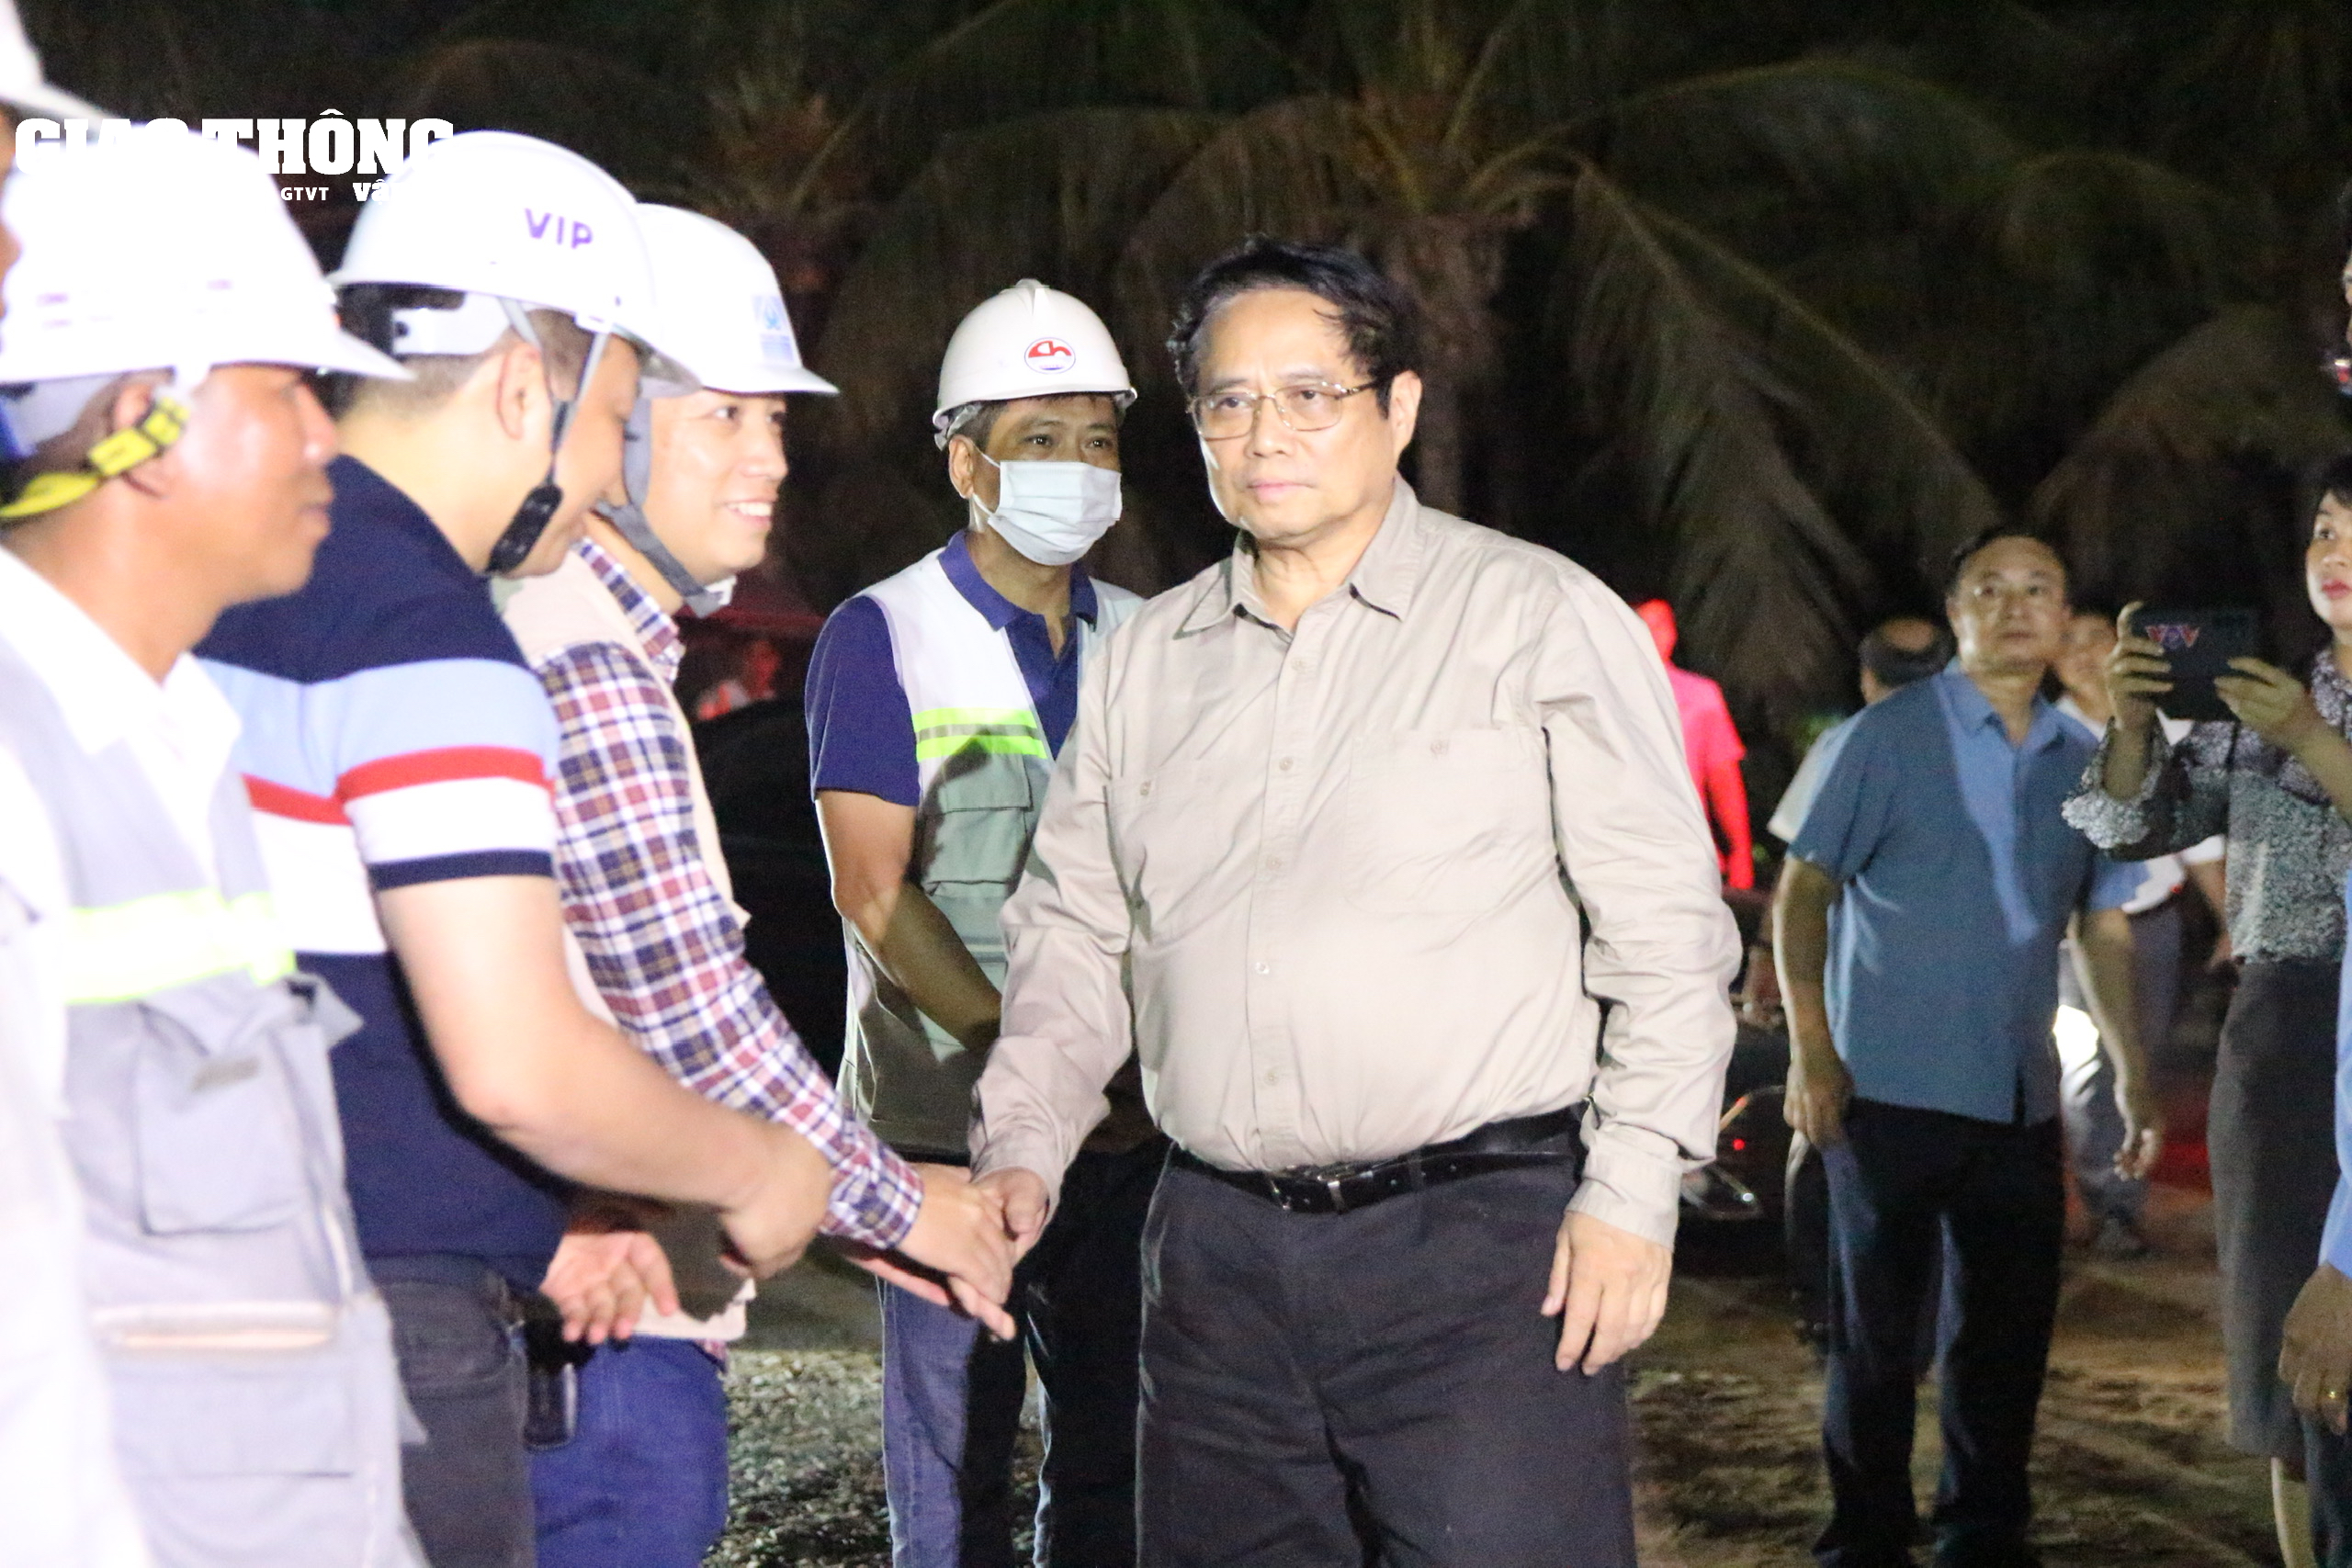 Chùm ảnh Thủ tướng Phạm Minh Chính kiểm tra cầu Rạch Miễu 2 trong đêm- Ảnh 2.